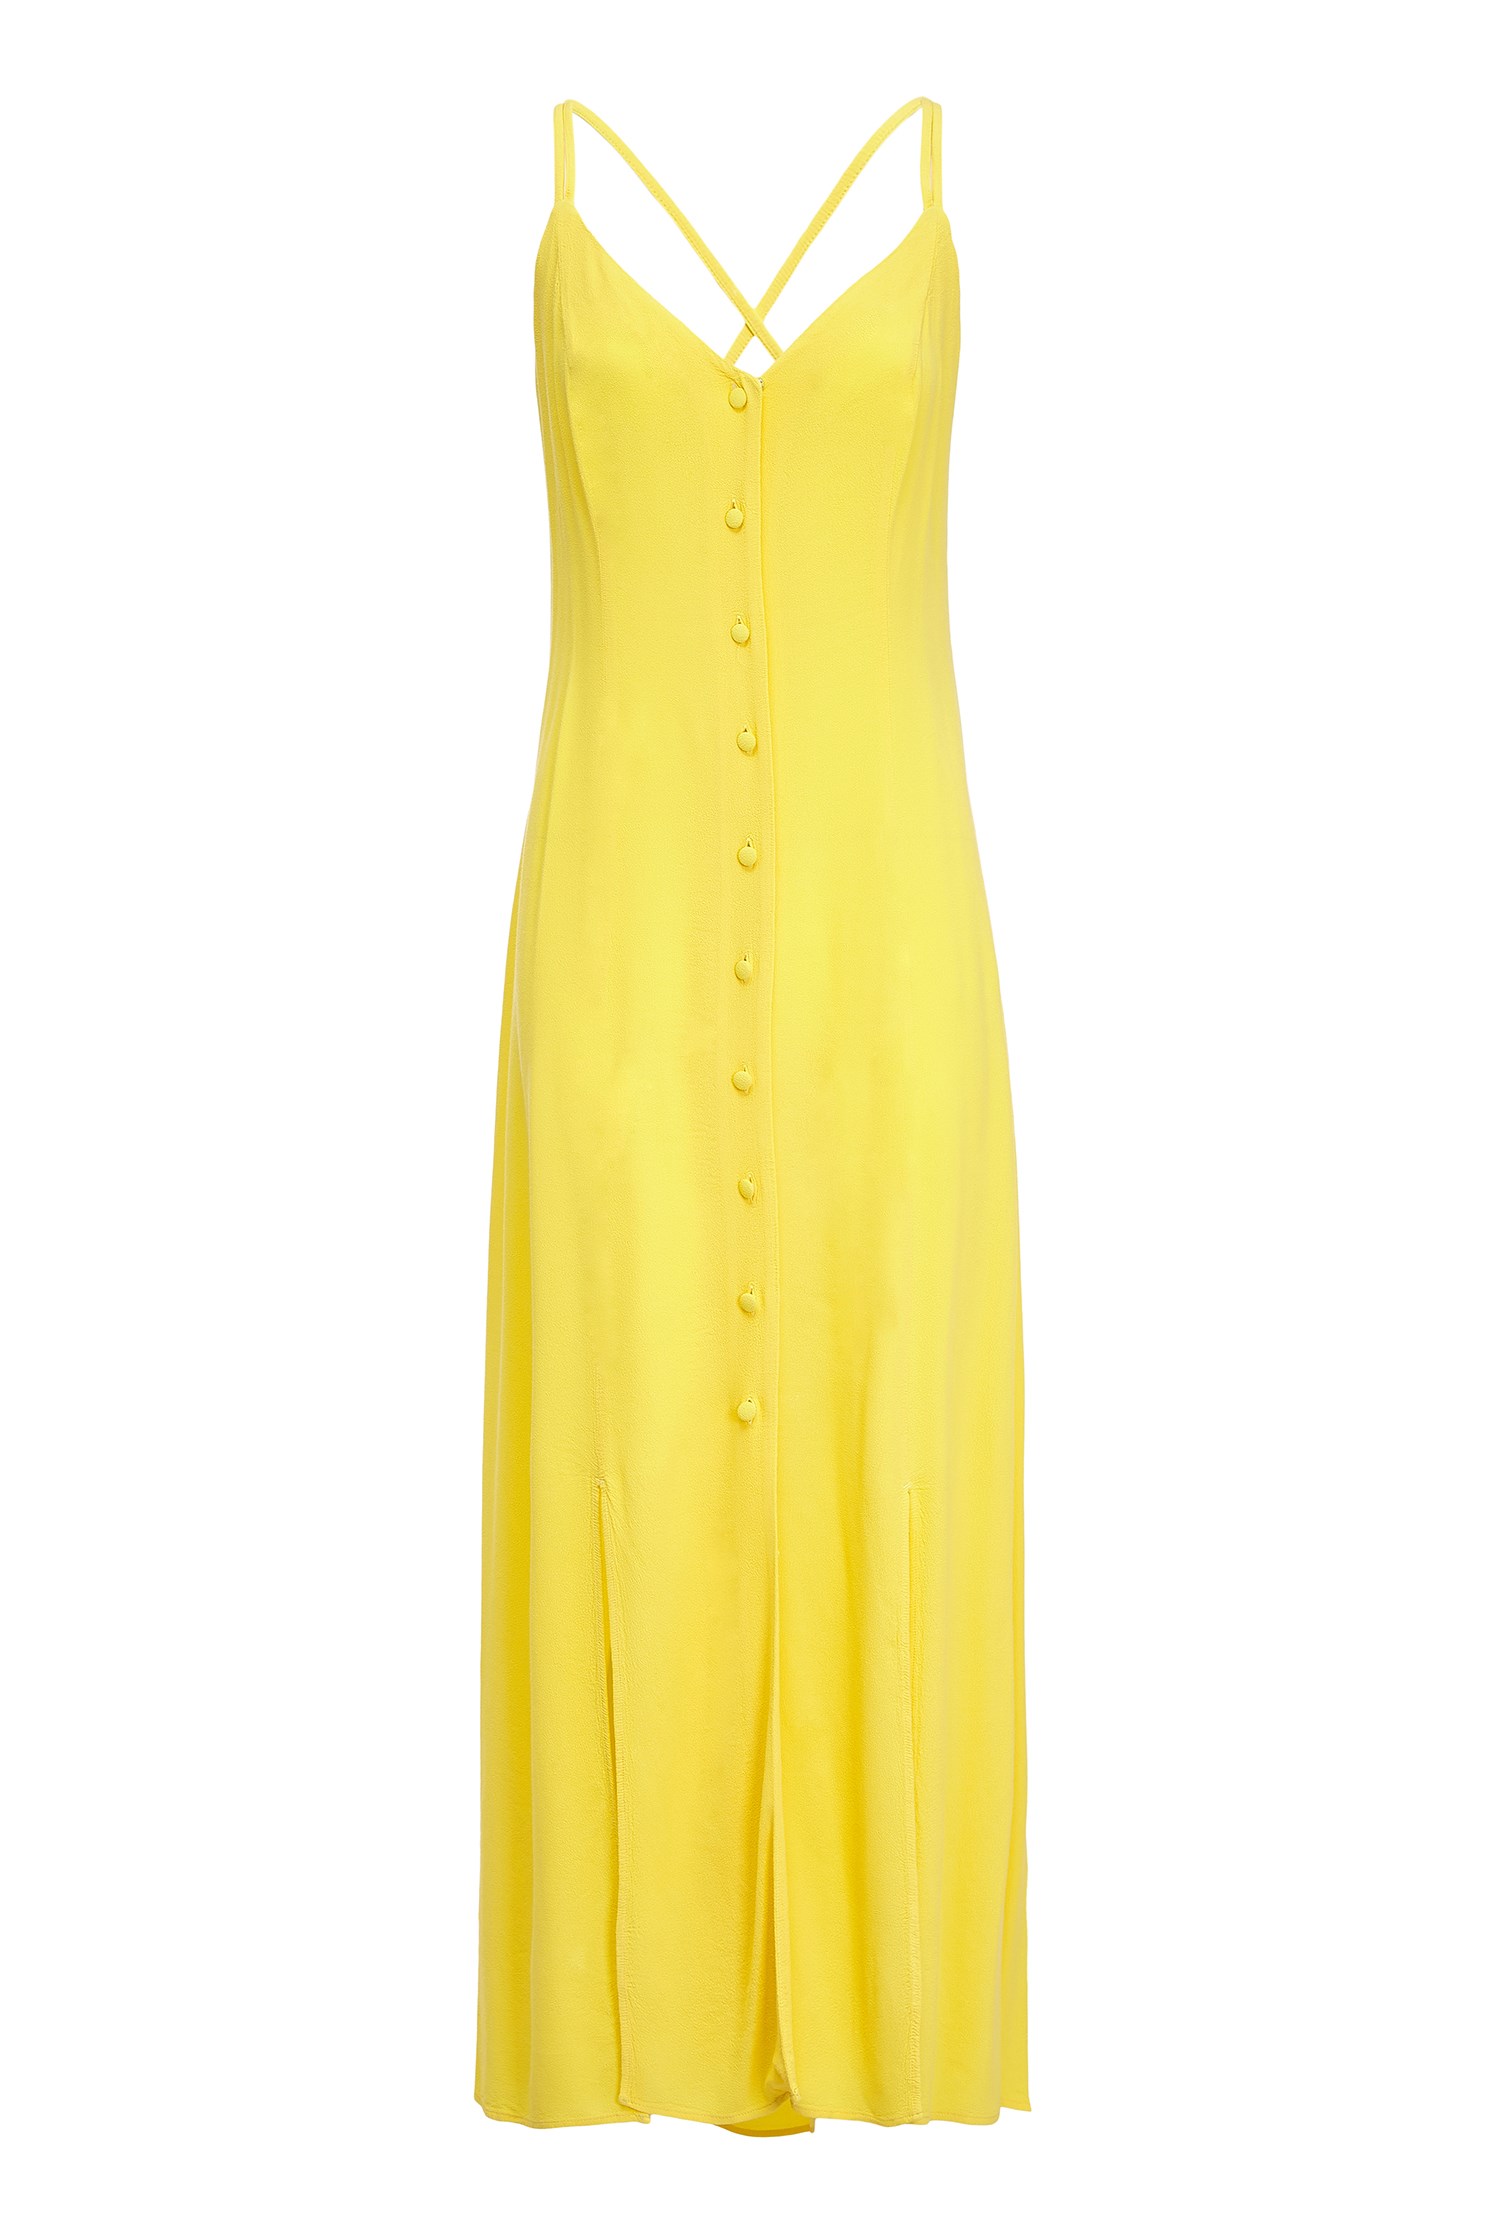 Thea Yellow Cami Midi Dress | Ghost London